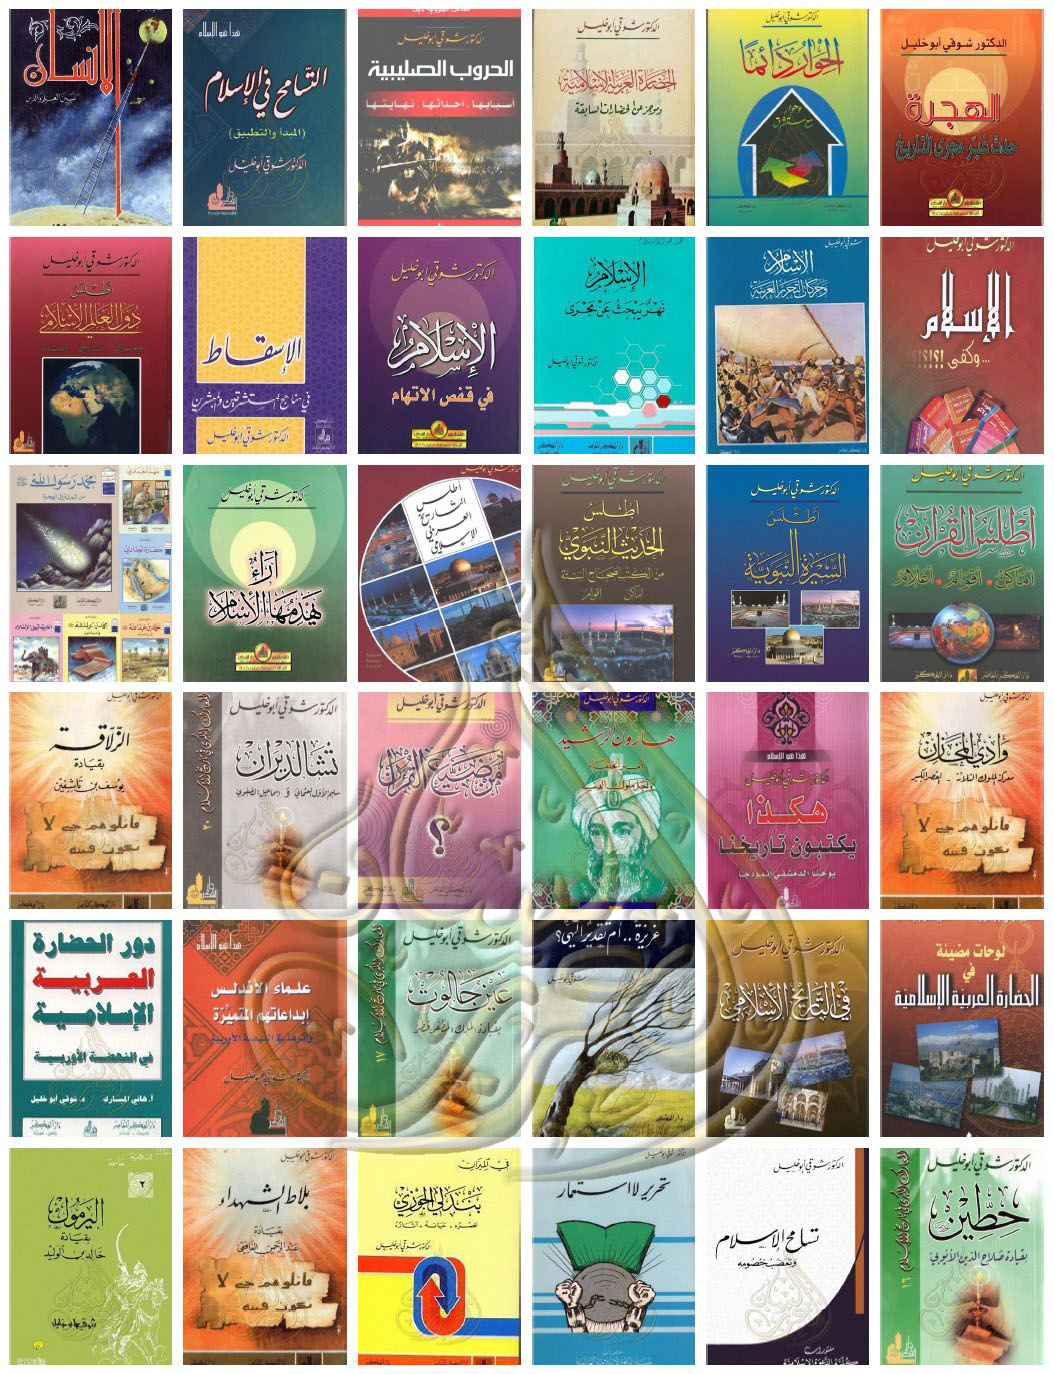 تحميل كتب ومؤلفات شوقى أبو خليل Pdf موسوعة الكتب